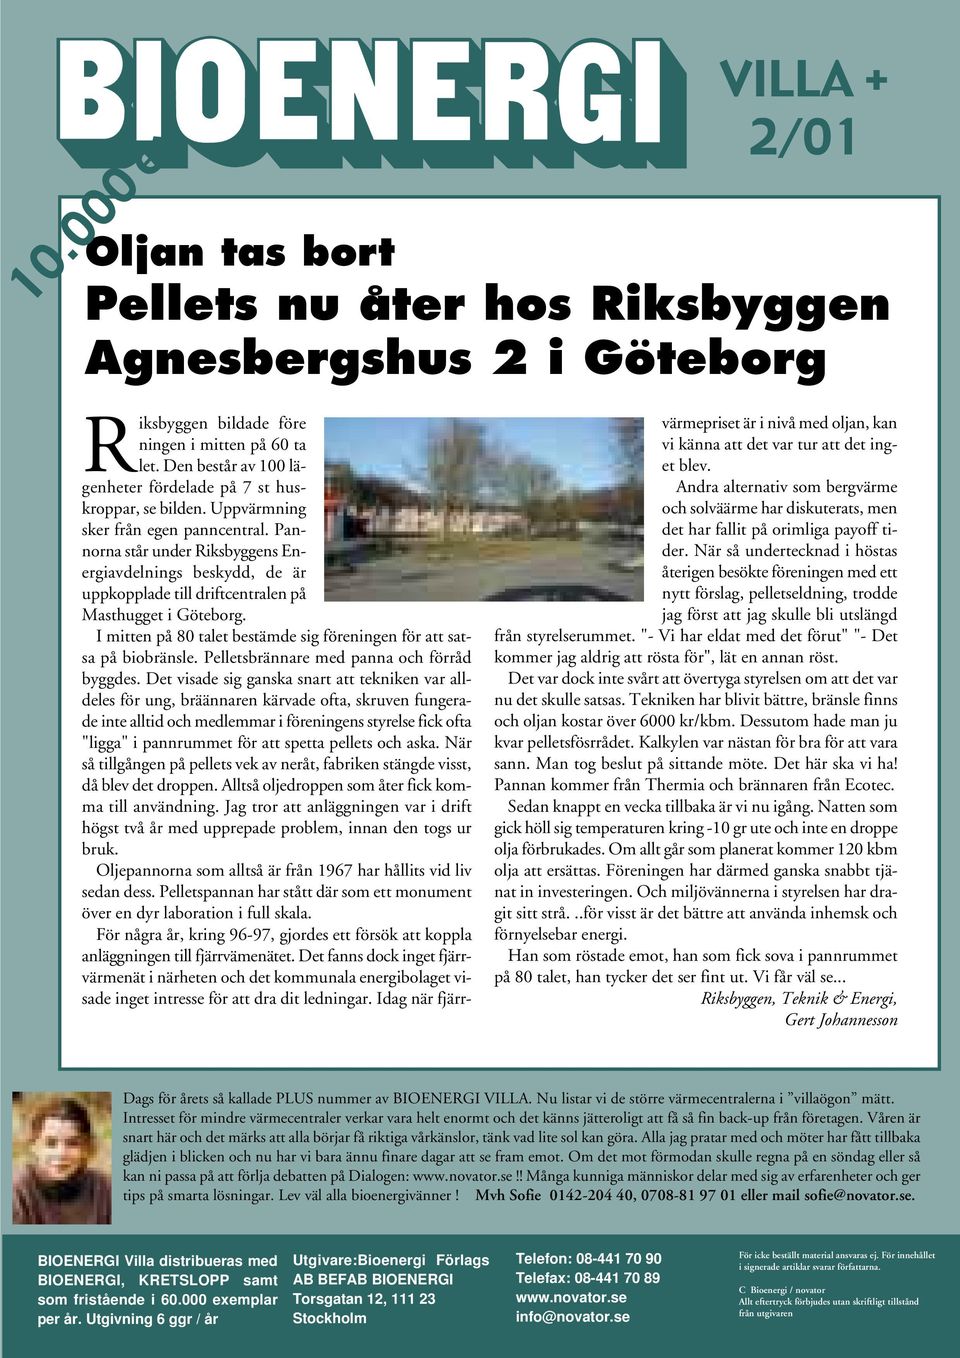 Pannorna står under Riksbyggens Energiavdelnings beskydd, de är uppkopplade till driftcentralen på Masthugget i Göteborg. I mitten på 80 talet bestämde sig föreningen för att satsa på biobränsle.